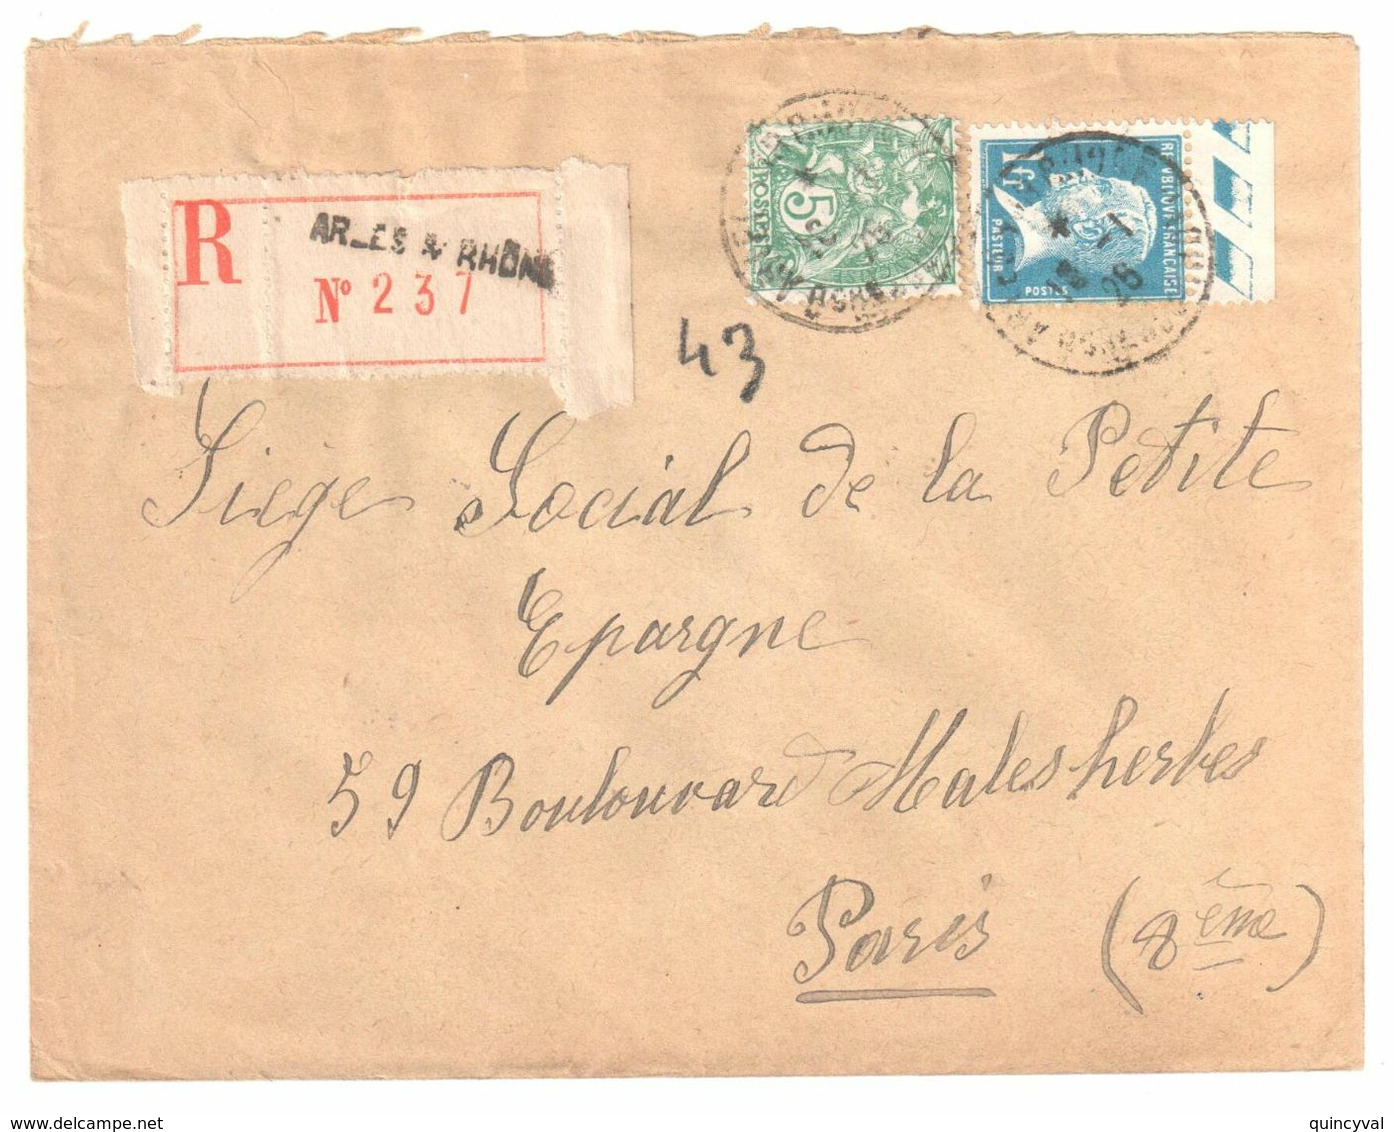 ARLES S RHONE Lettre Recommandée 1 F Pasteur Bord De Feuille 5c Blanc Yv 111 179 Ob 18 1 1926 - Briefe U. Dokumente